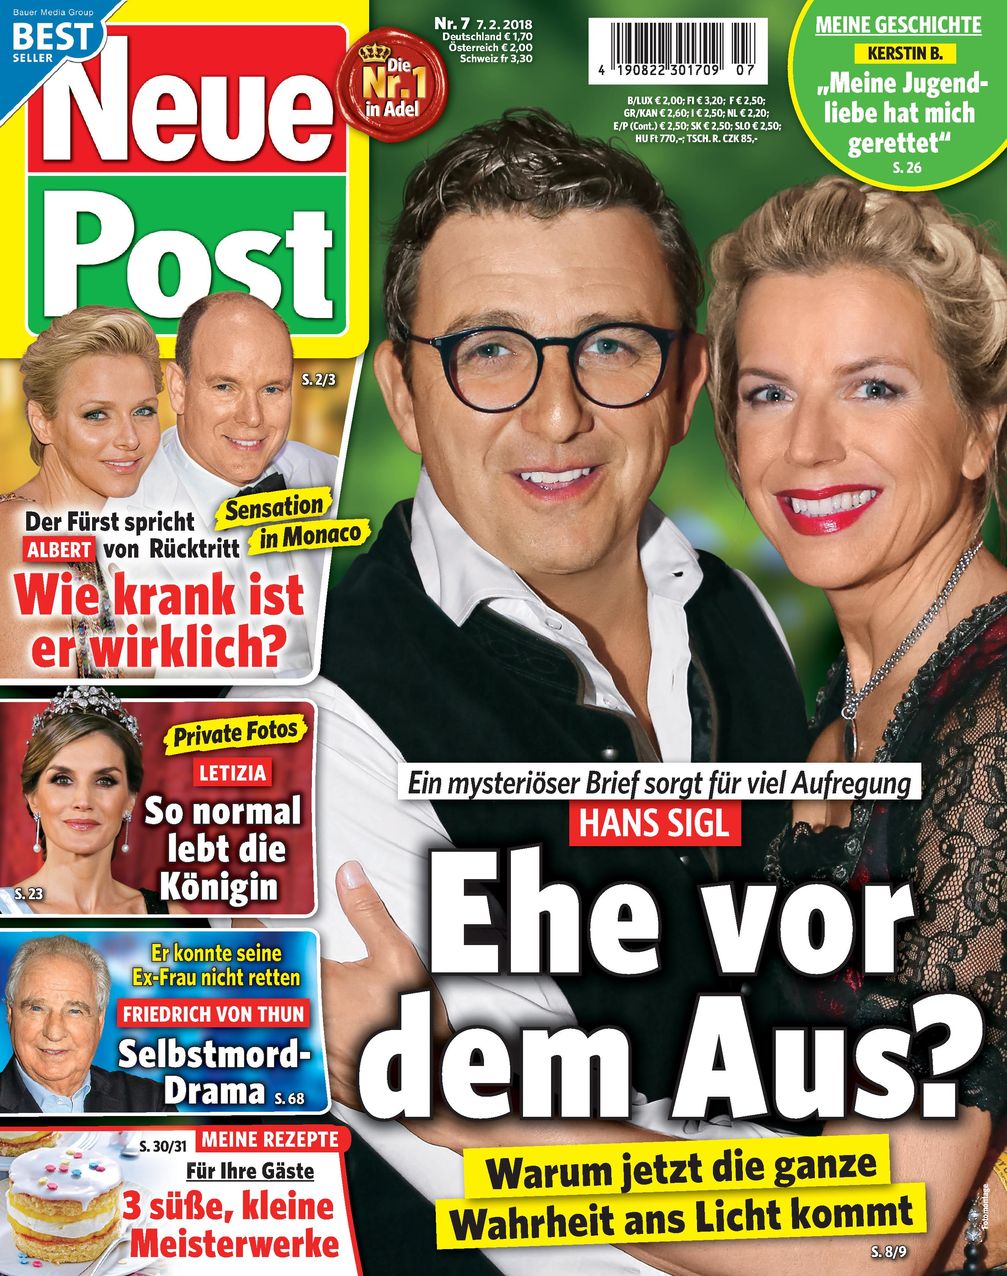 Neue Post Ausgabe 7/2018 / Bild: "obs/Bauer Media Group, Neue Post"